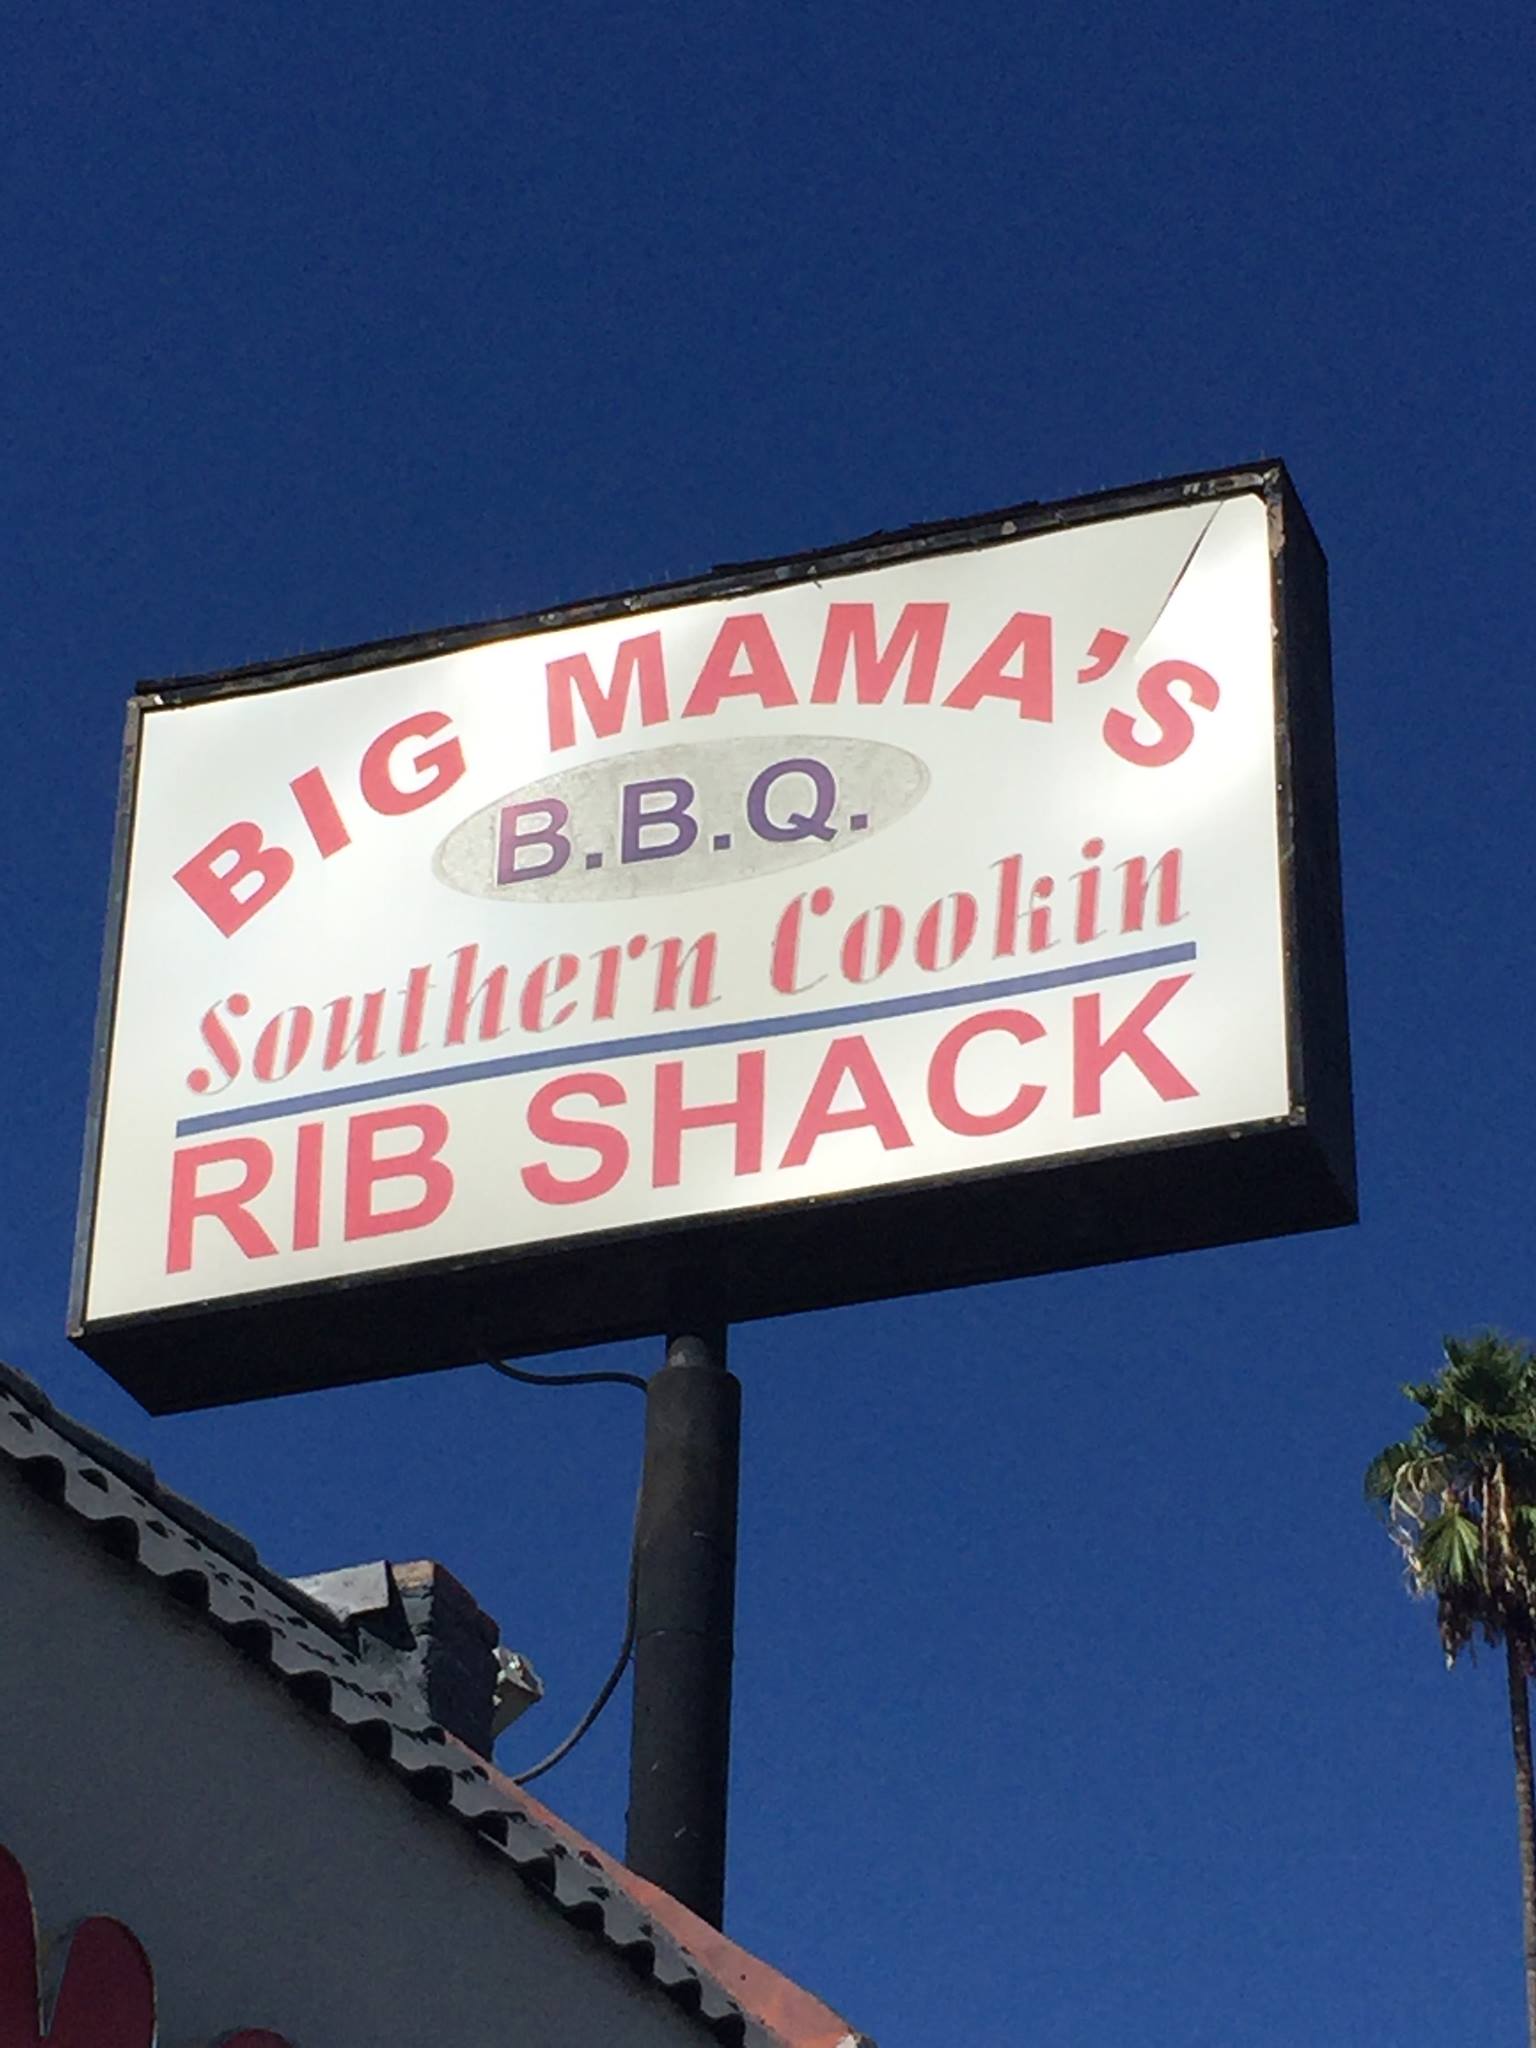 Big Mama’s Rib Shack